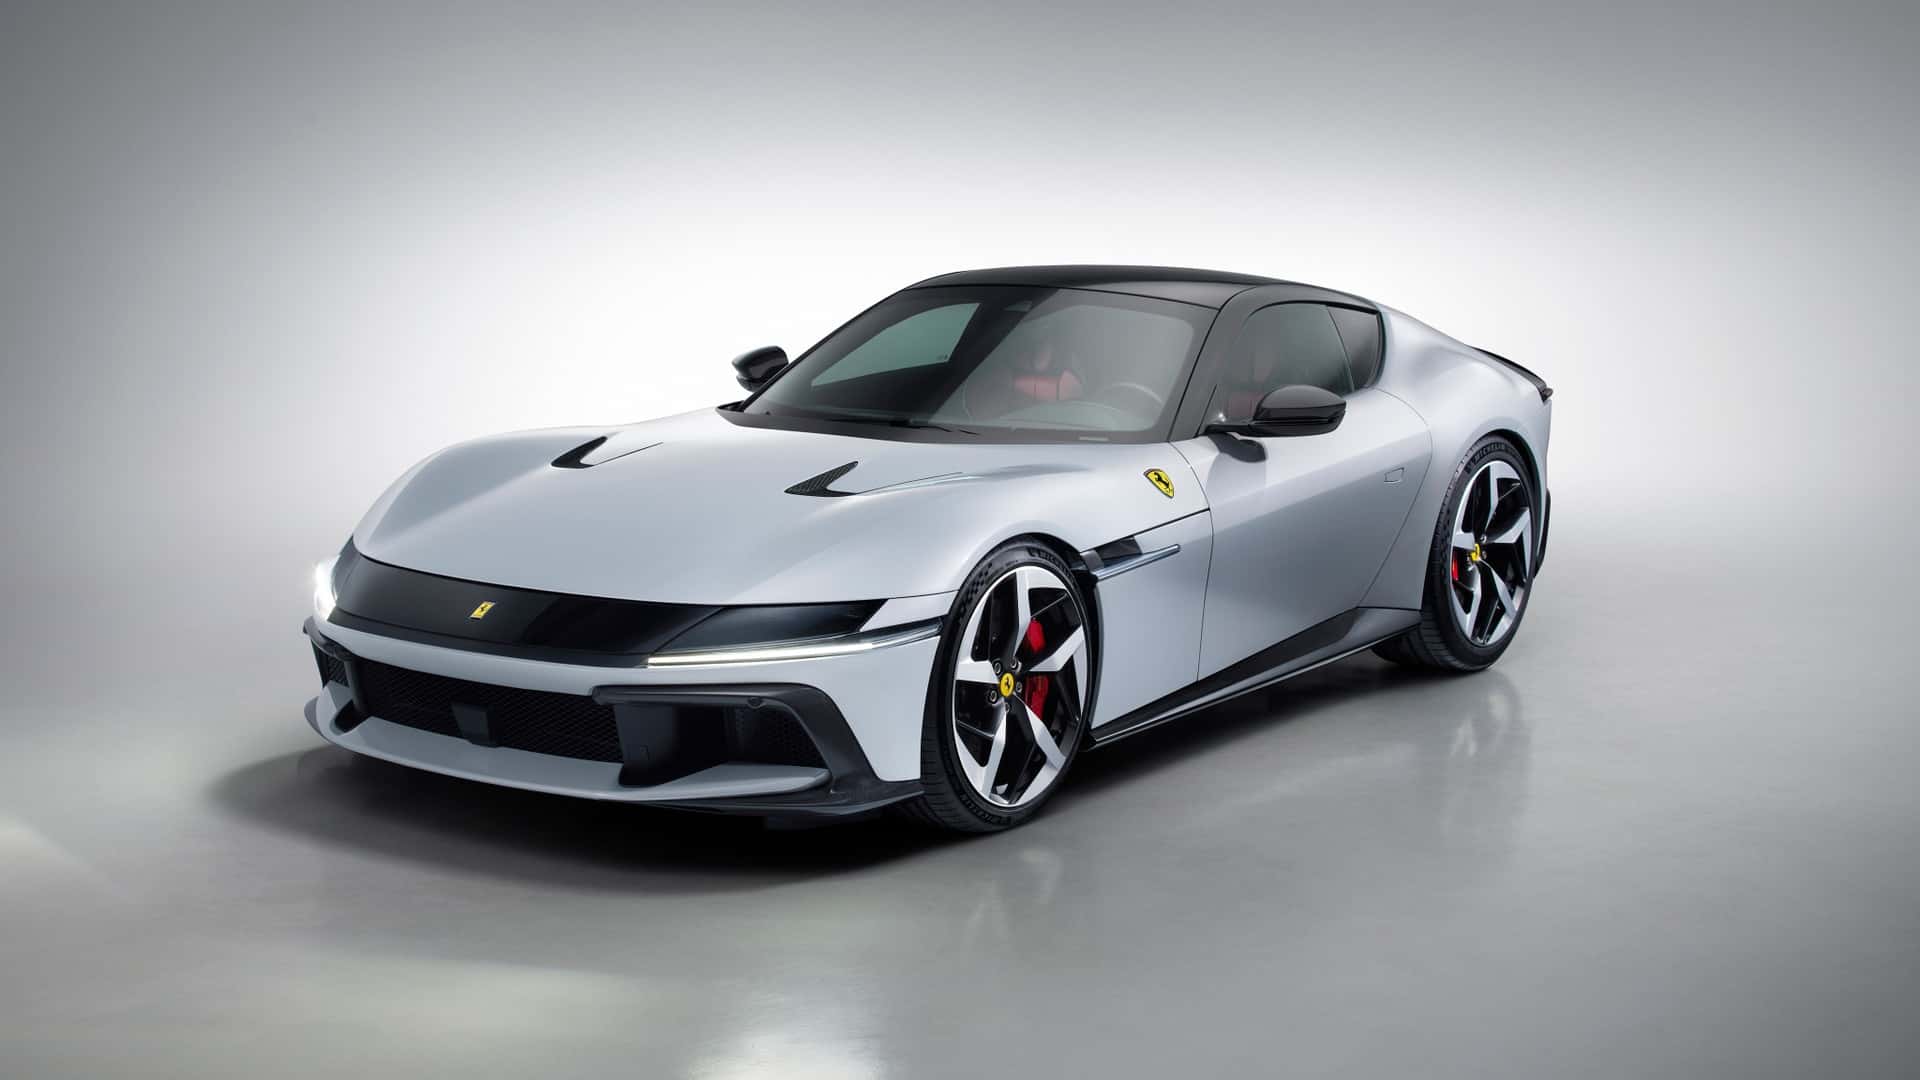 Ferrari 12Cilindri ra mắt, hội tụ đủ yếu tố mạnh mẽ, hiện đại và đắt ferrari-12cilindri-autodaily-2.jpg